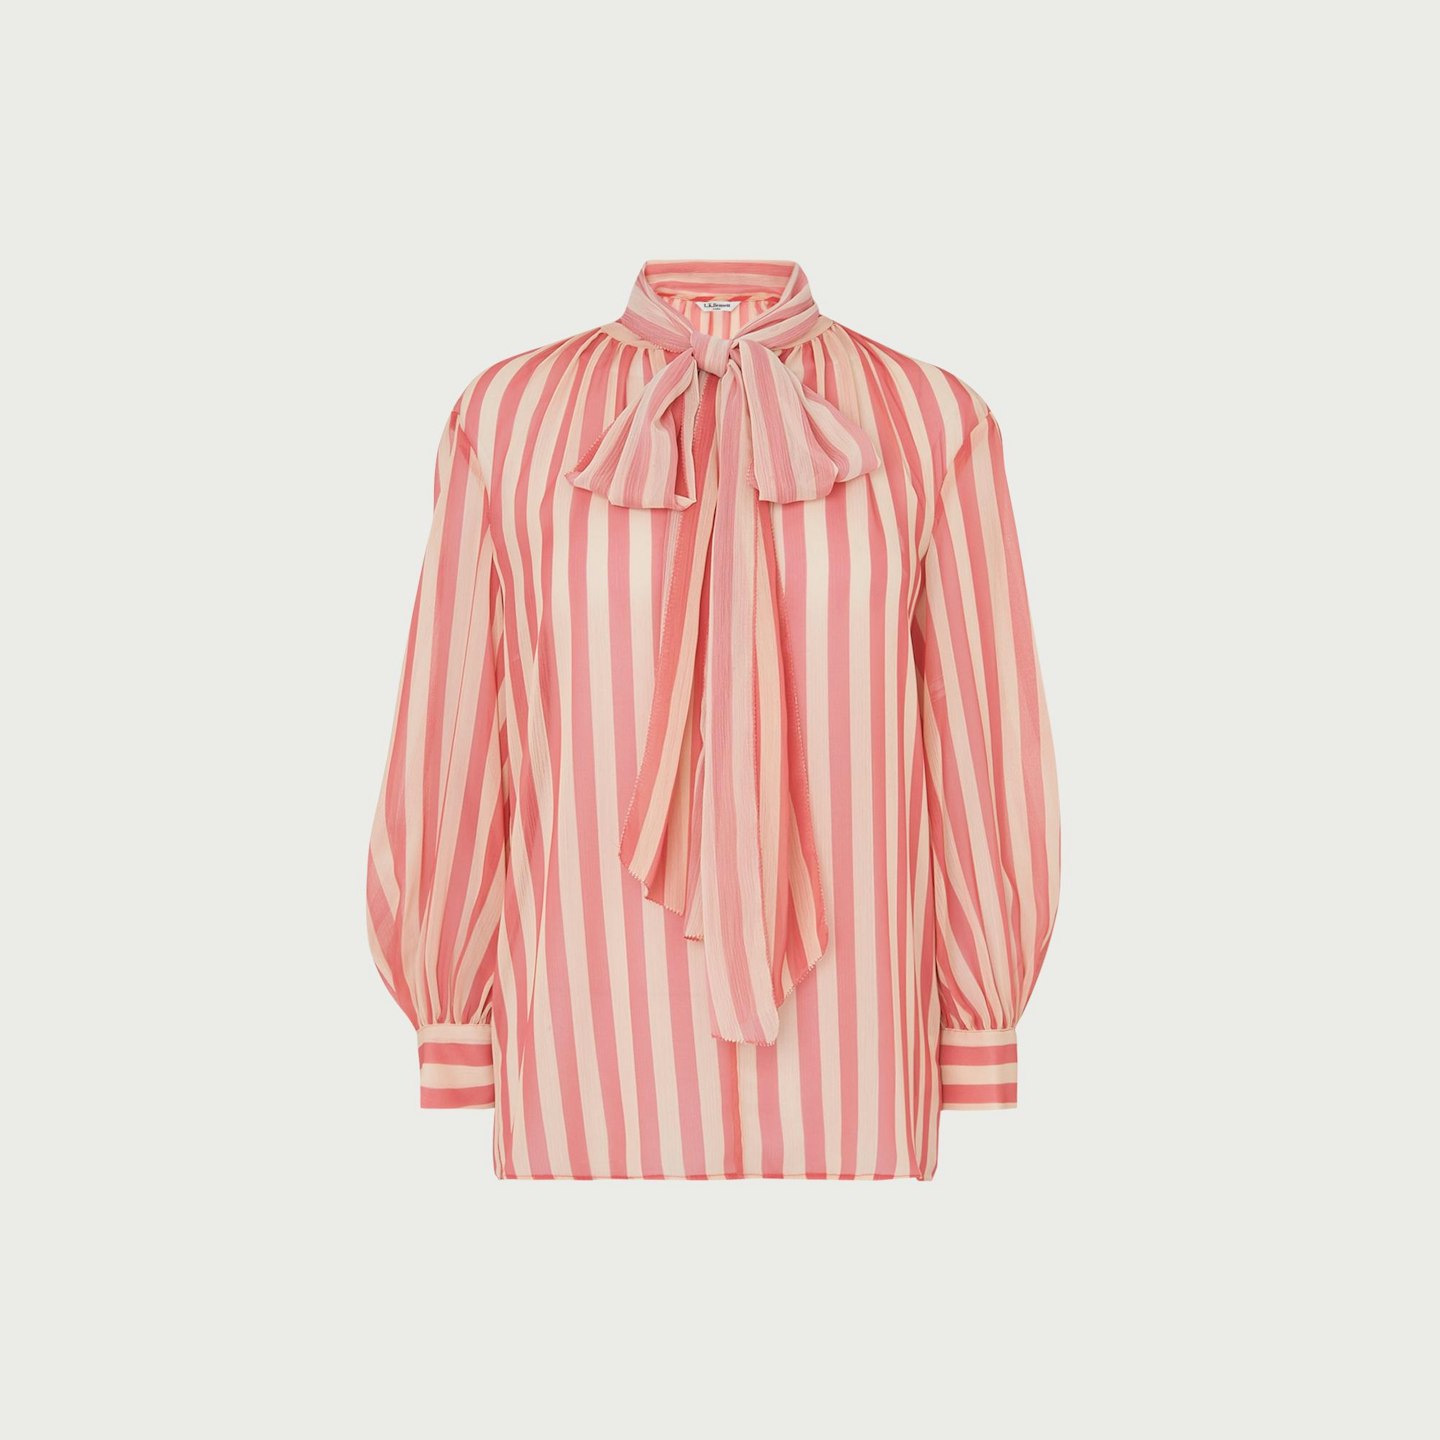 L.K.Bennett, Holzer Pink Stripe Blouse, £150